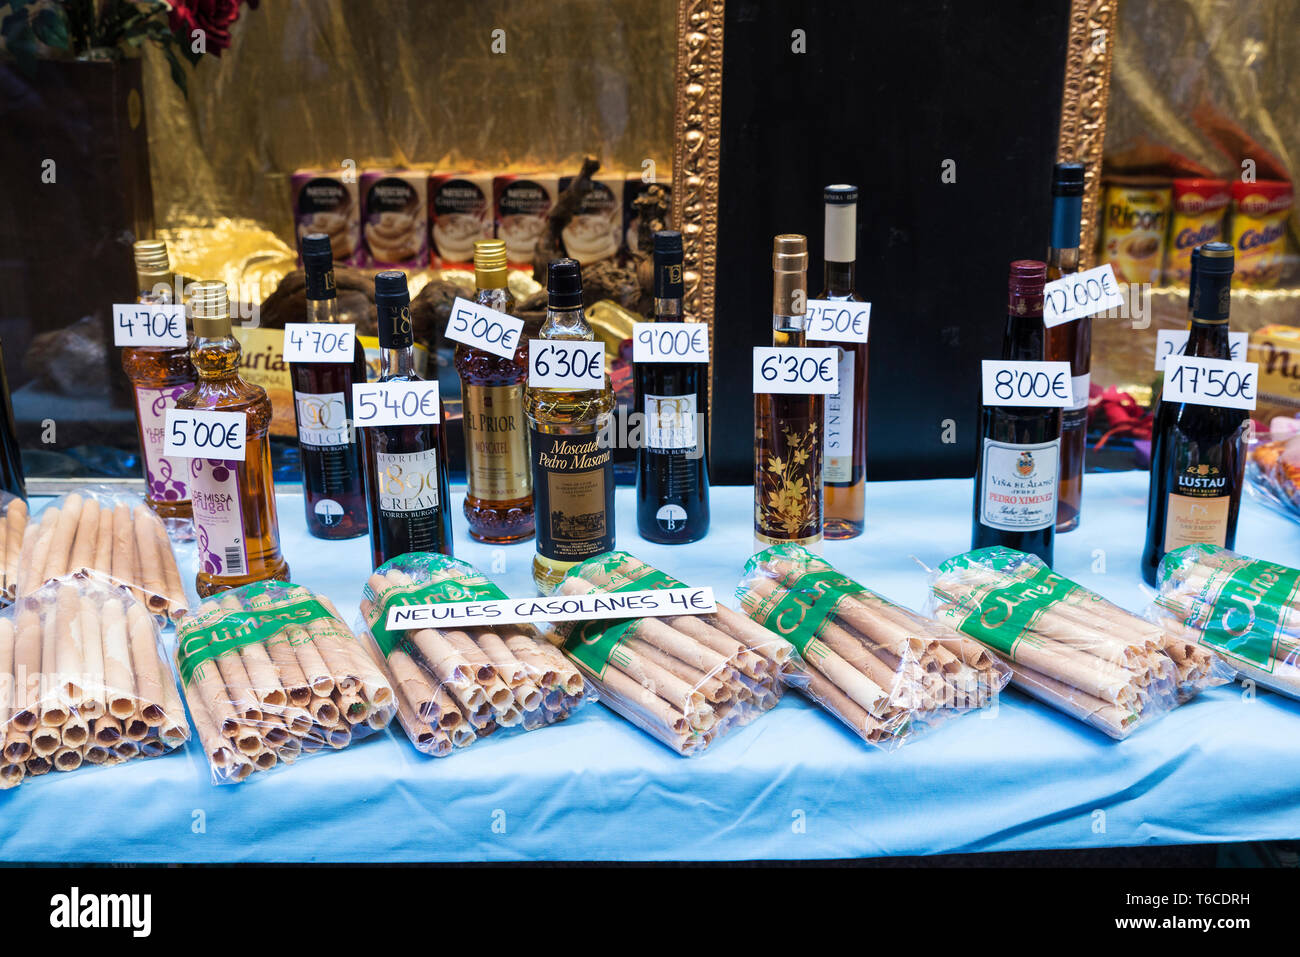 Cardona, Spagna - 30 Ottobre 2016: bottiglie di Moscato e handmade neules, un tipo di biscotto catalana mangiata tradizionalmente a Natale con la cava (CATA Foto Stock